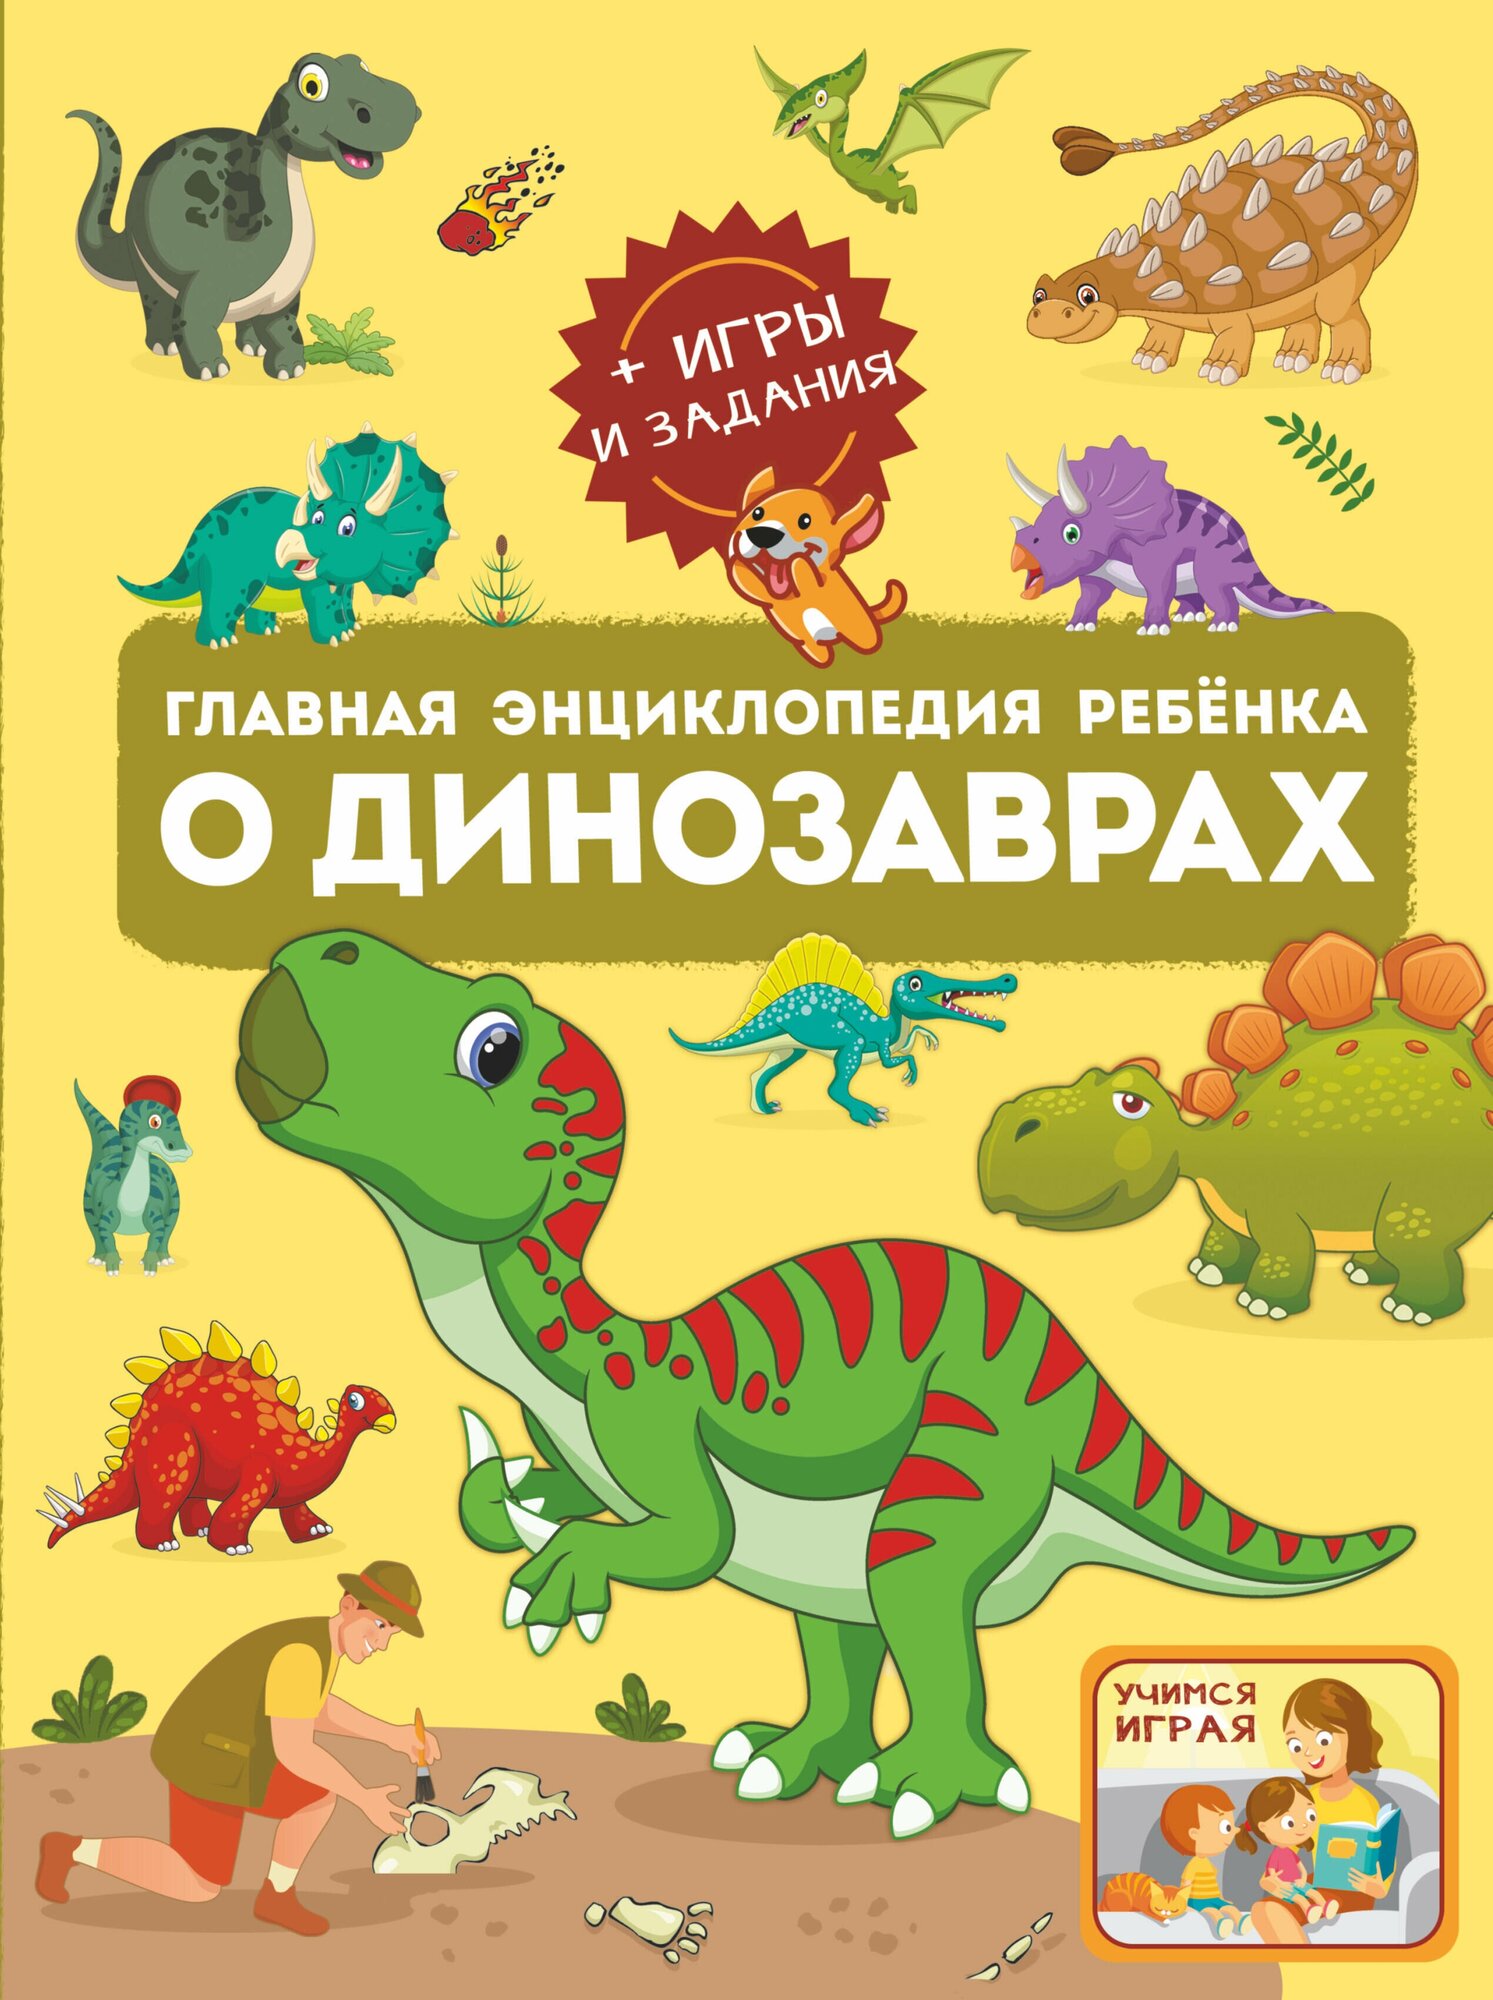 Главная энциклопедия ребёнка о динозаврах .